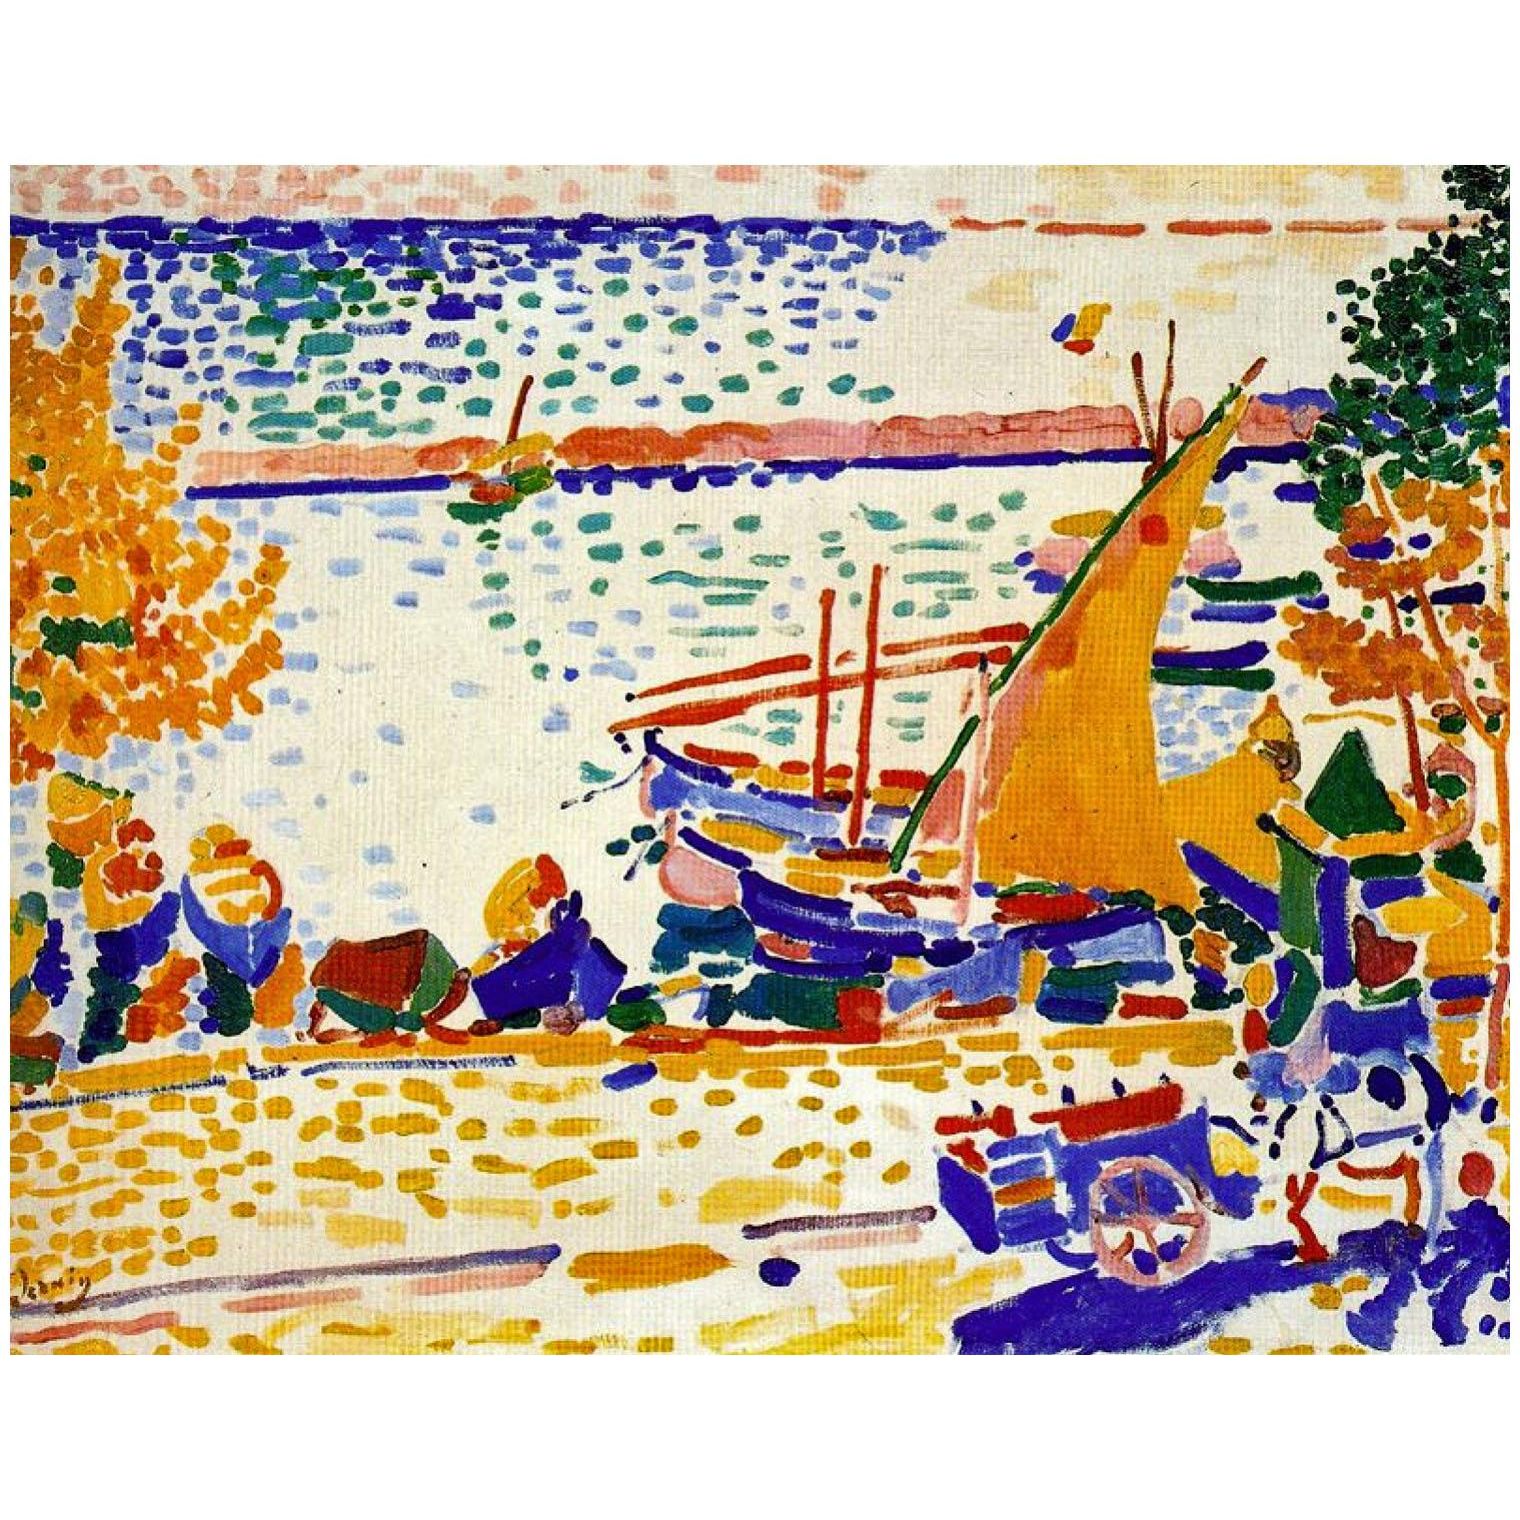 Andre Derain. Le Port de Collioure. 1905. Musee d’Art moderne Troyes